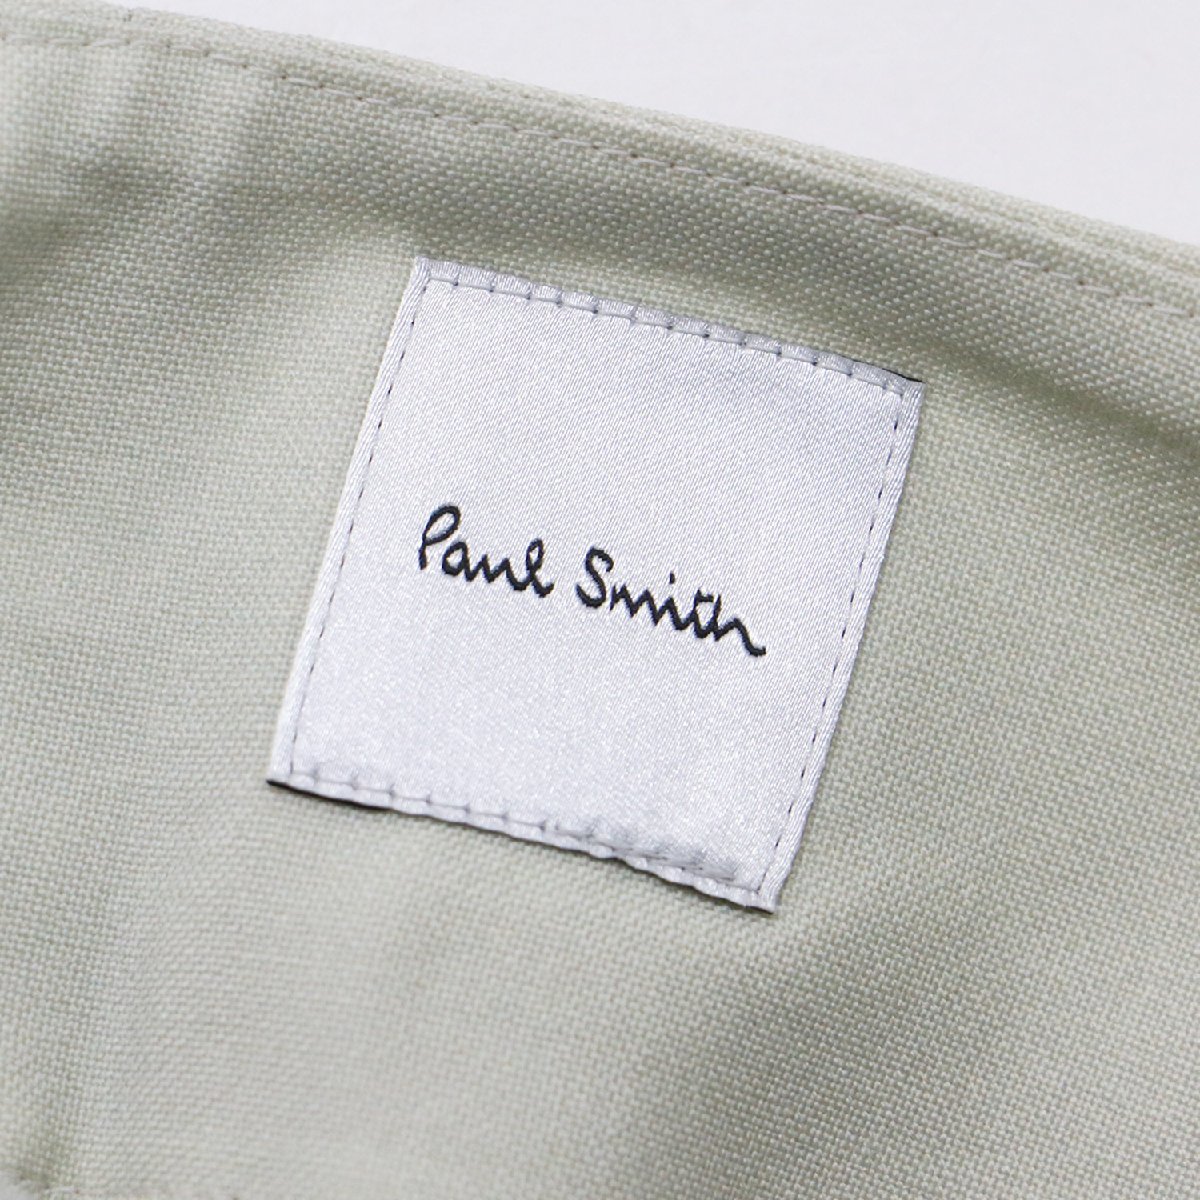 新品 Paul Smith ポールスミス パンツ サイズ:40(M) ロング ワイド ストレート ハイウエスト スプレー ペイント ウール ライトグリーン系_画像3